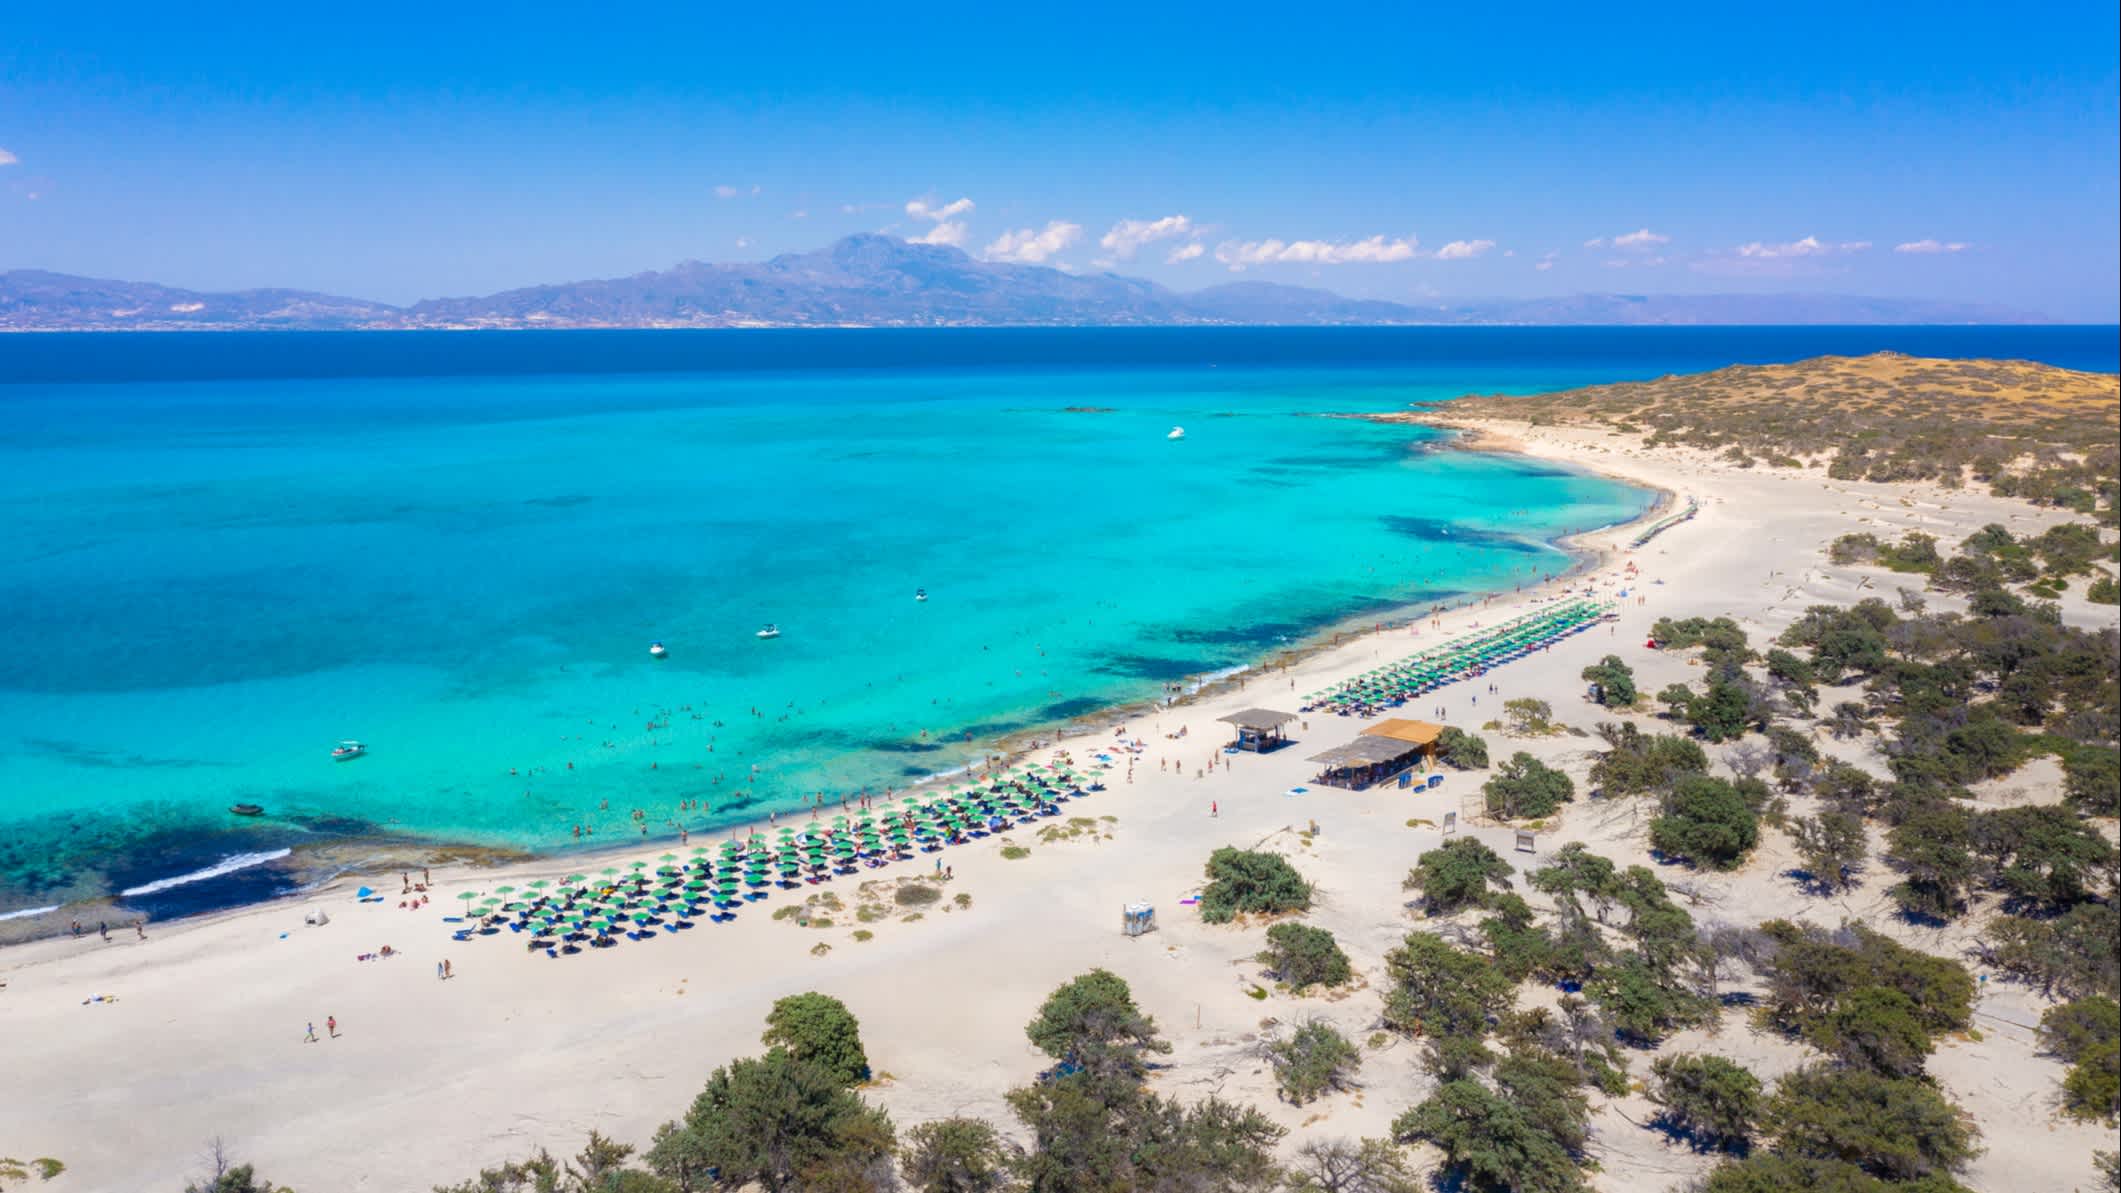 Exotische Chryssi Insel im Süden von Kreta, Griechenland.

